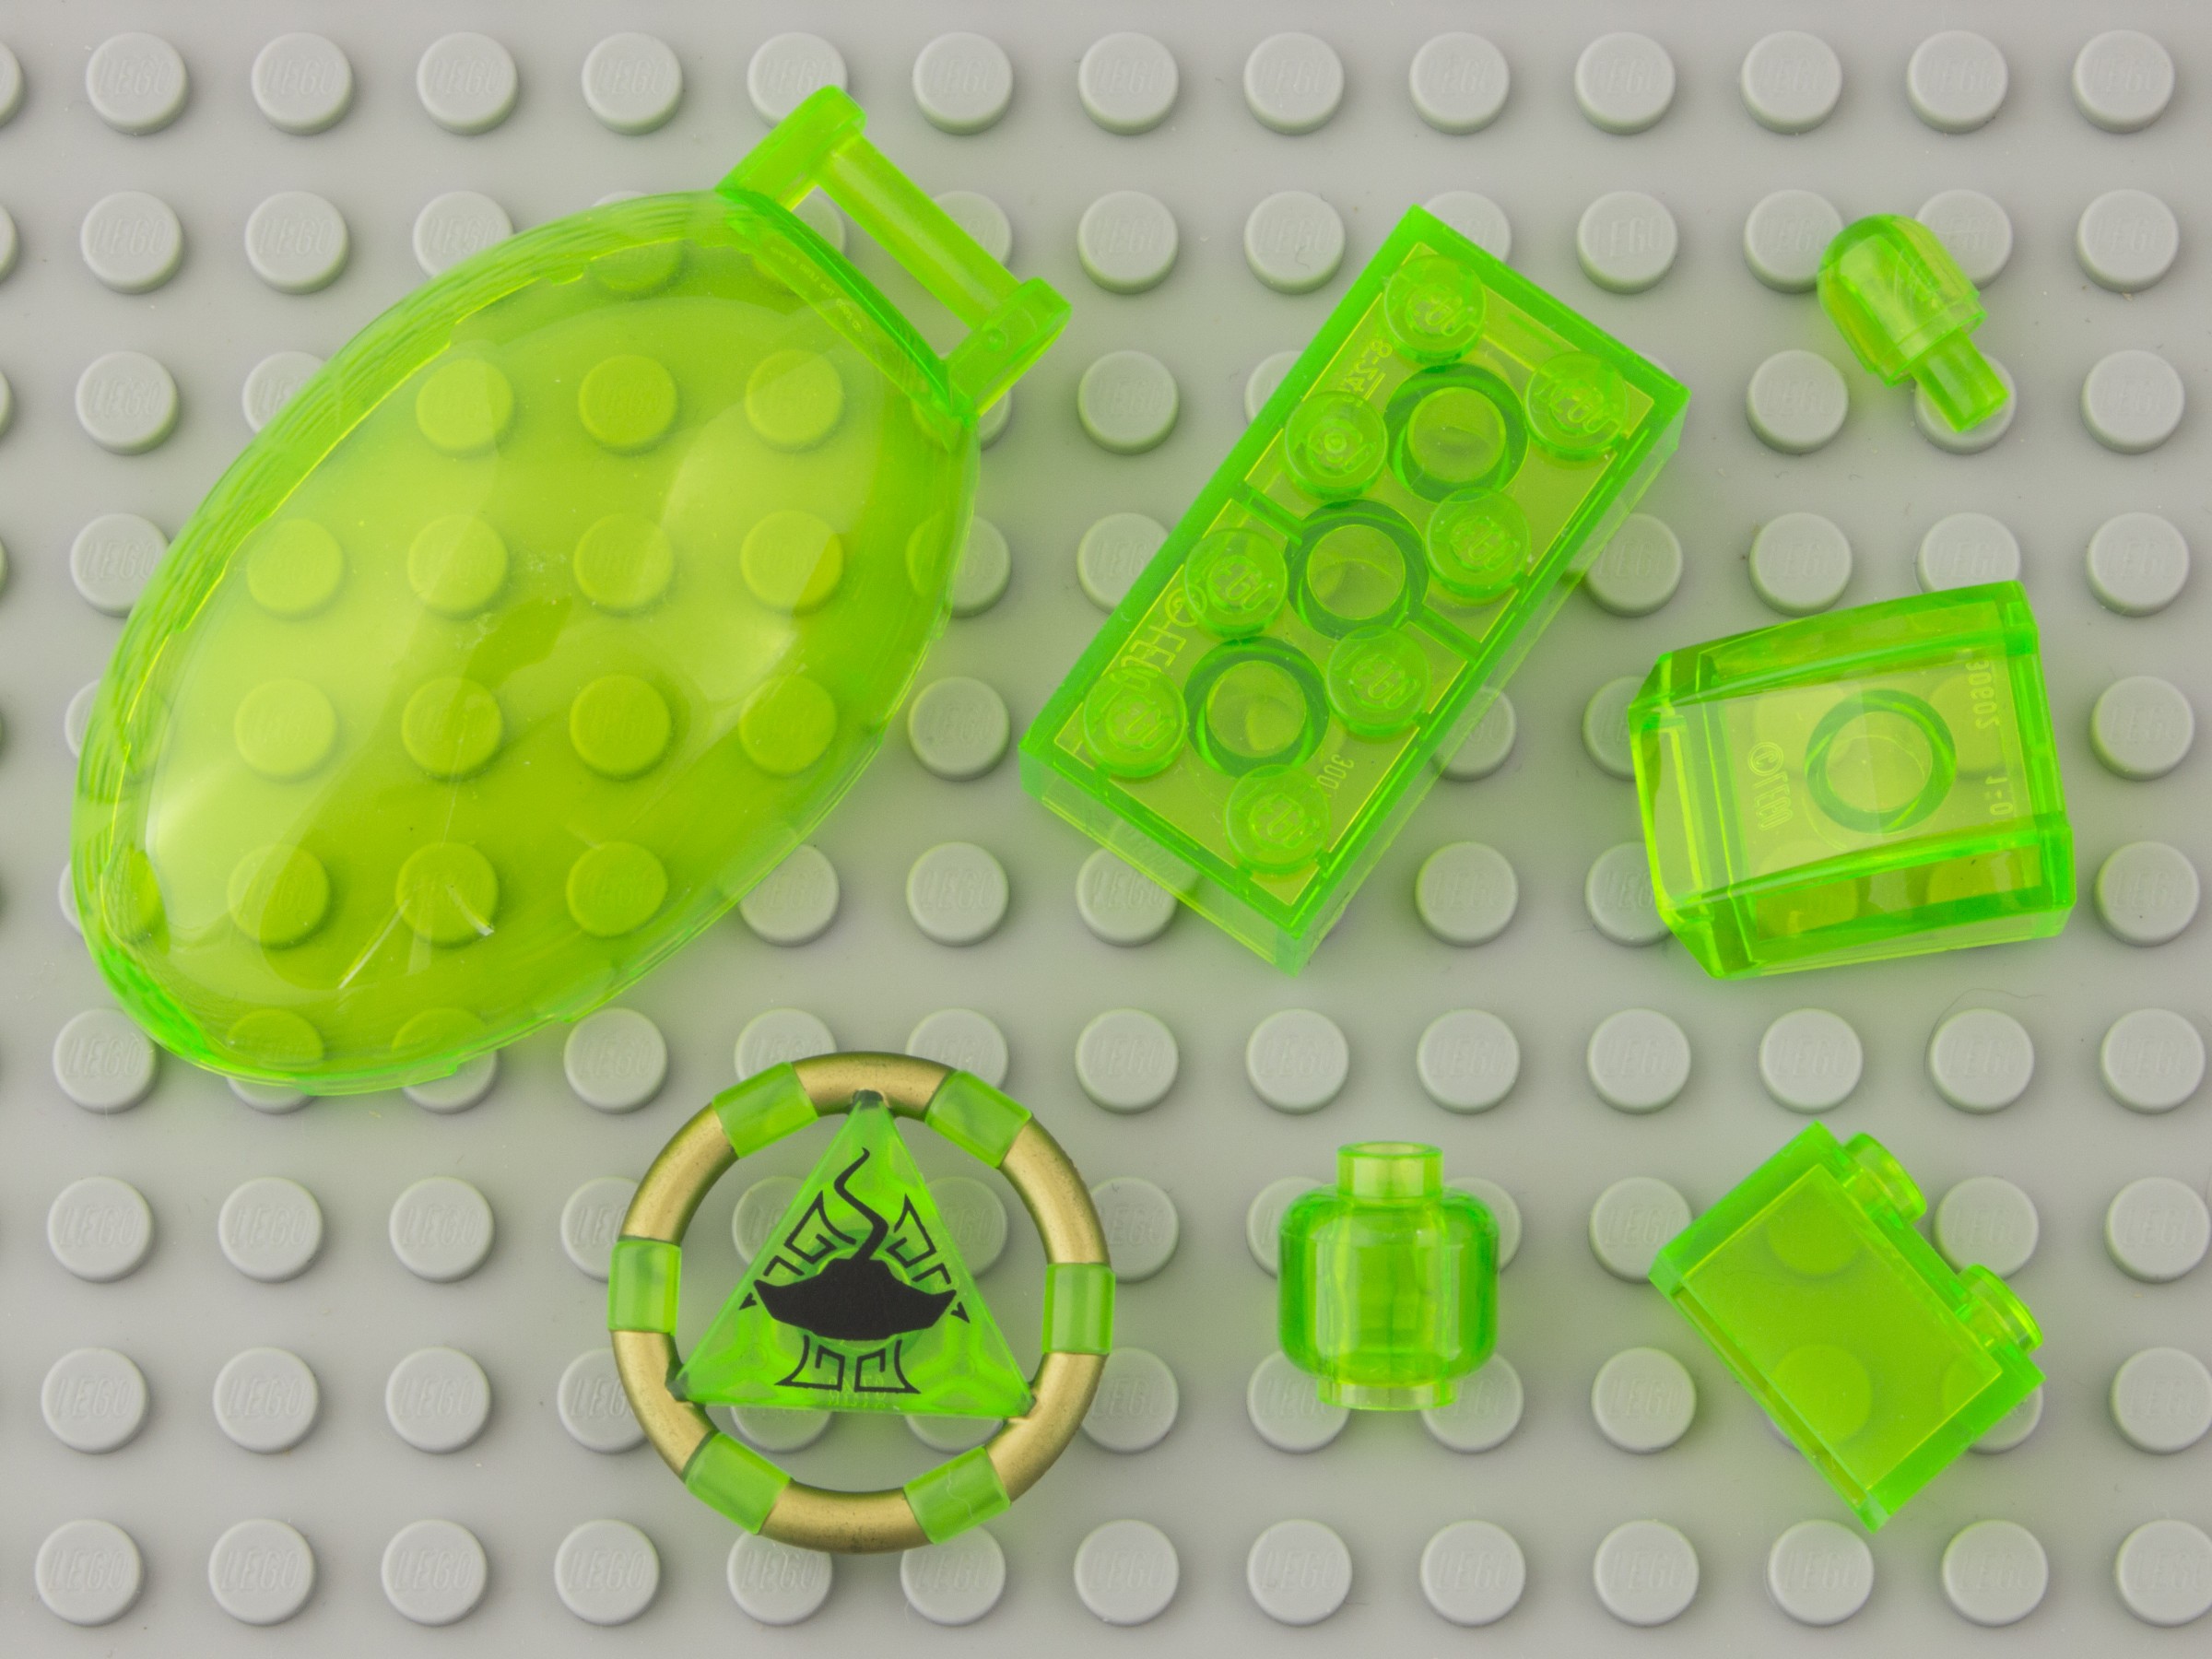 Rasende Adskille plantageejer Transparent | Green | Brickset: LEGO set guide and database